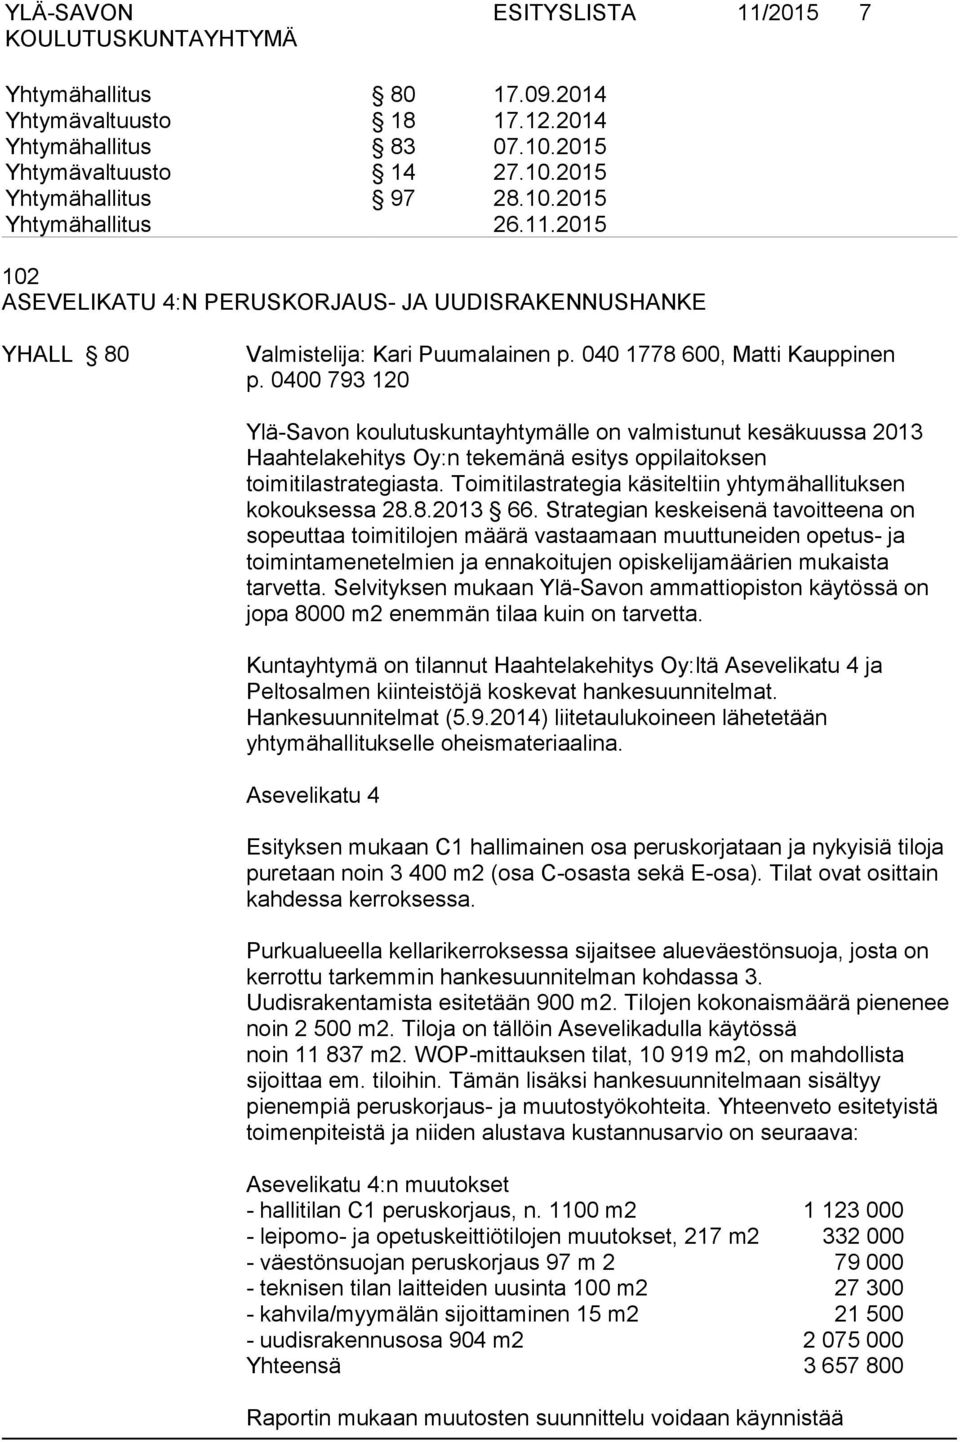 0400 793 120 Ylä-Savon koulutuskuntayhtymälle on valmistunut kesäkuussa 2013 Haahtelakehitys Oy:n tekemänä esitys oppilaitoksen toimitilastrategiasta.